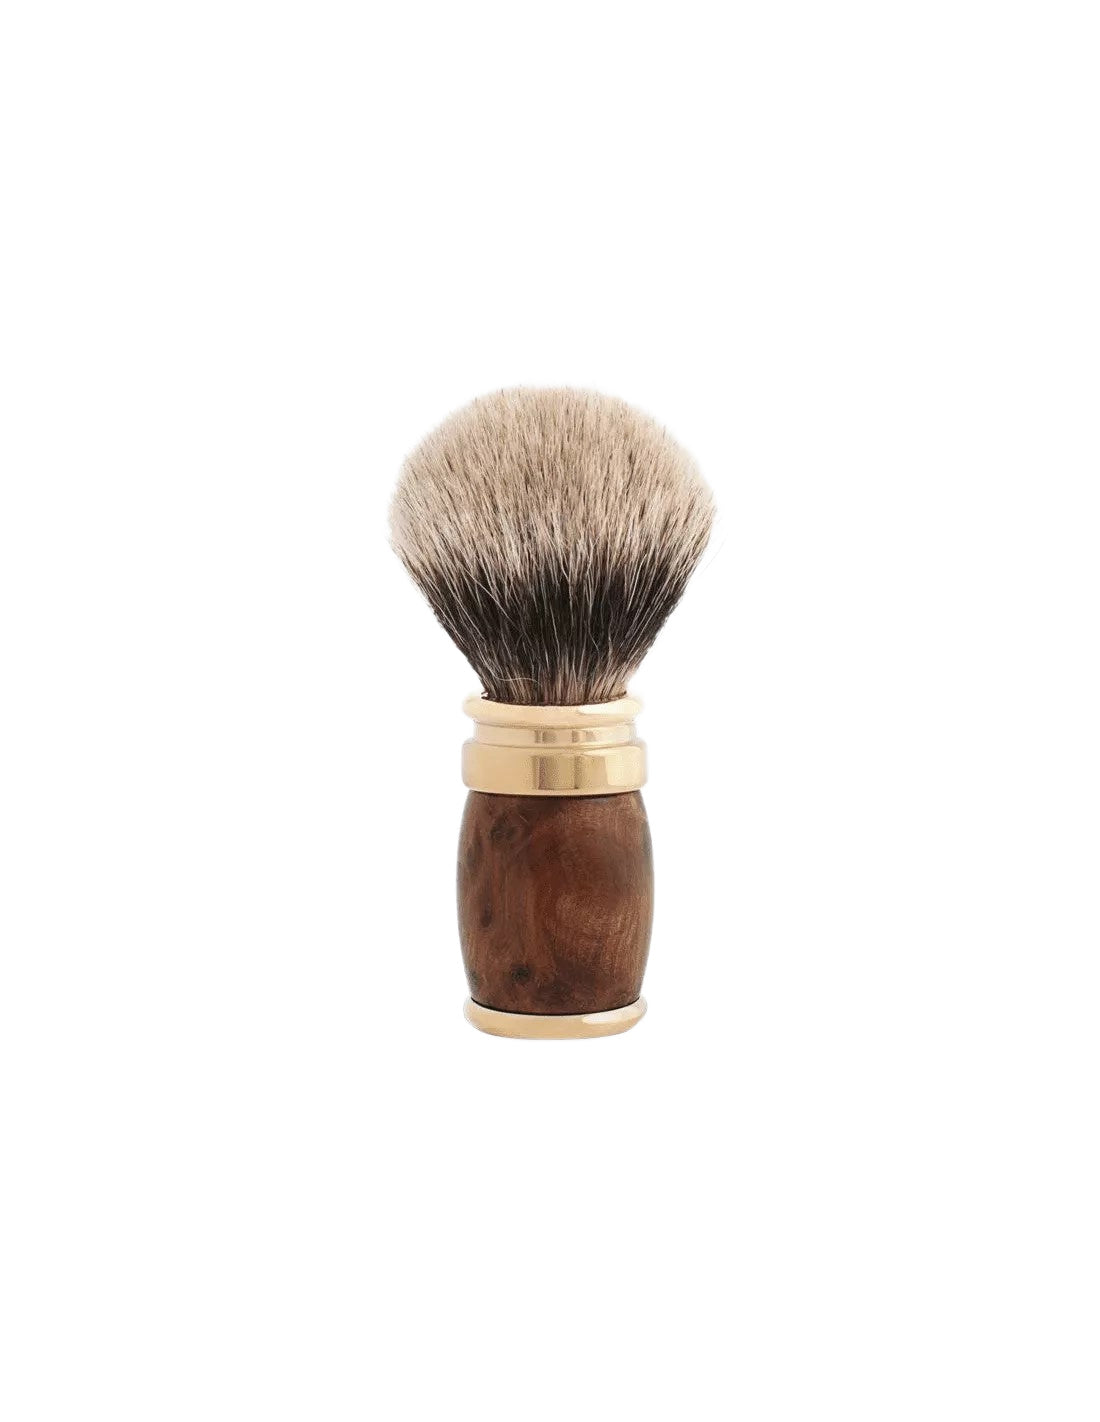 Plisson 1808 Thuja Wood & Gold Genuine Badger Shaving Brush